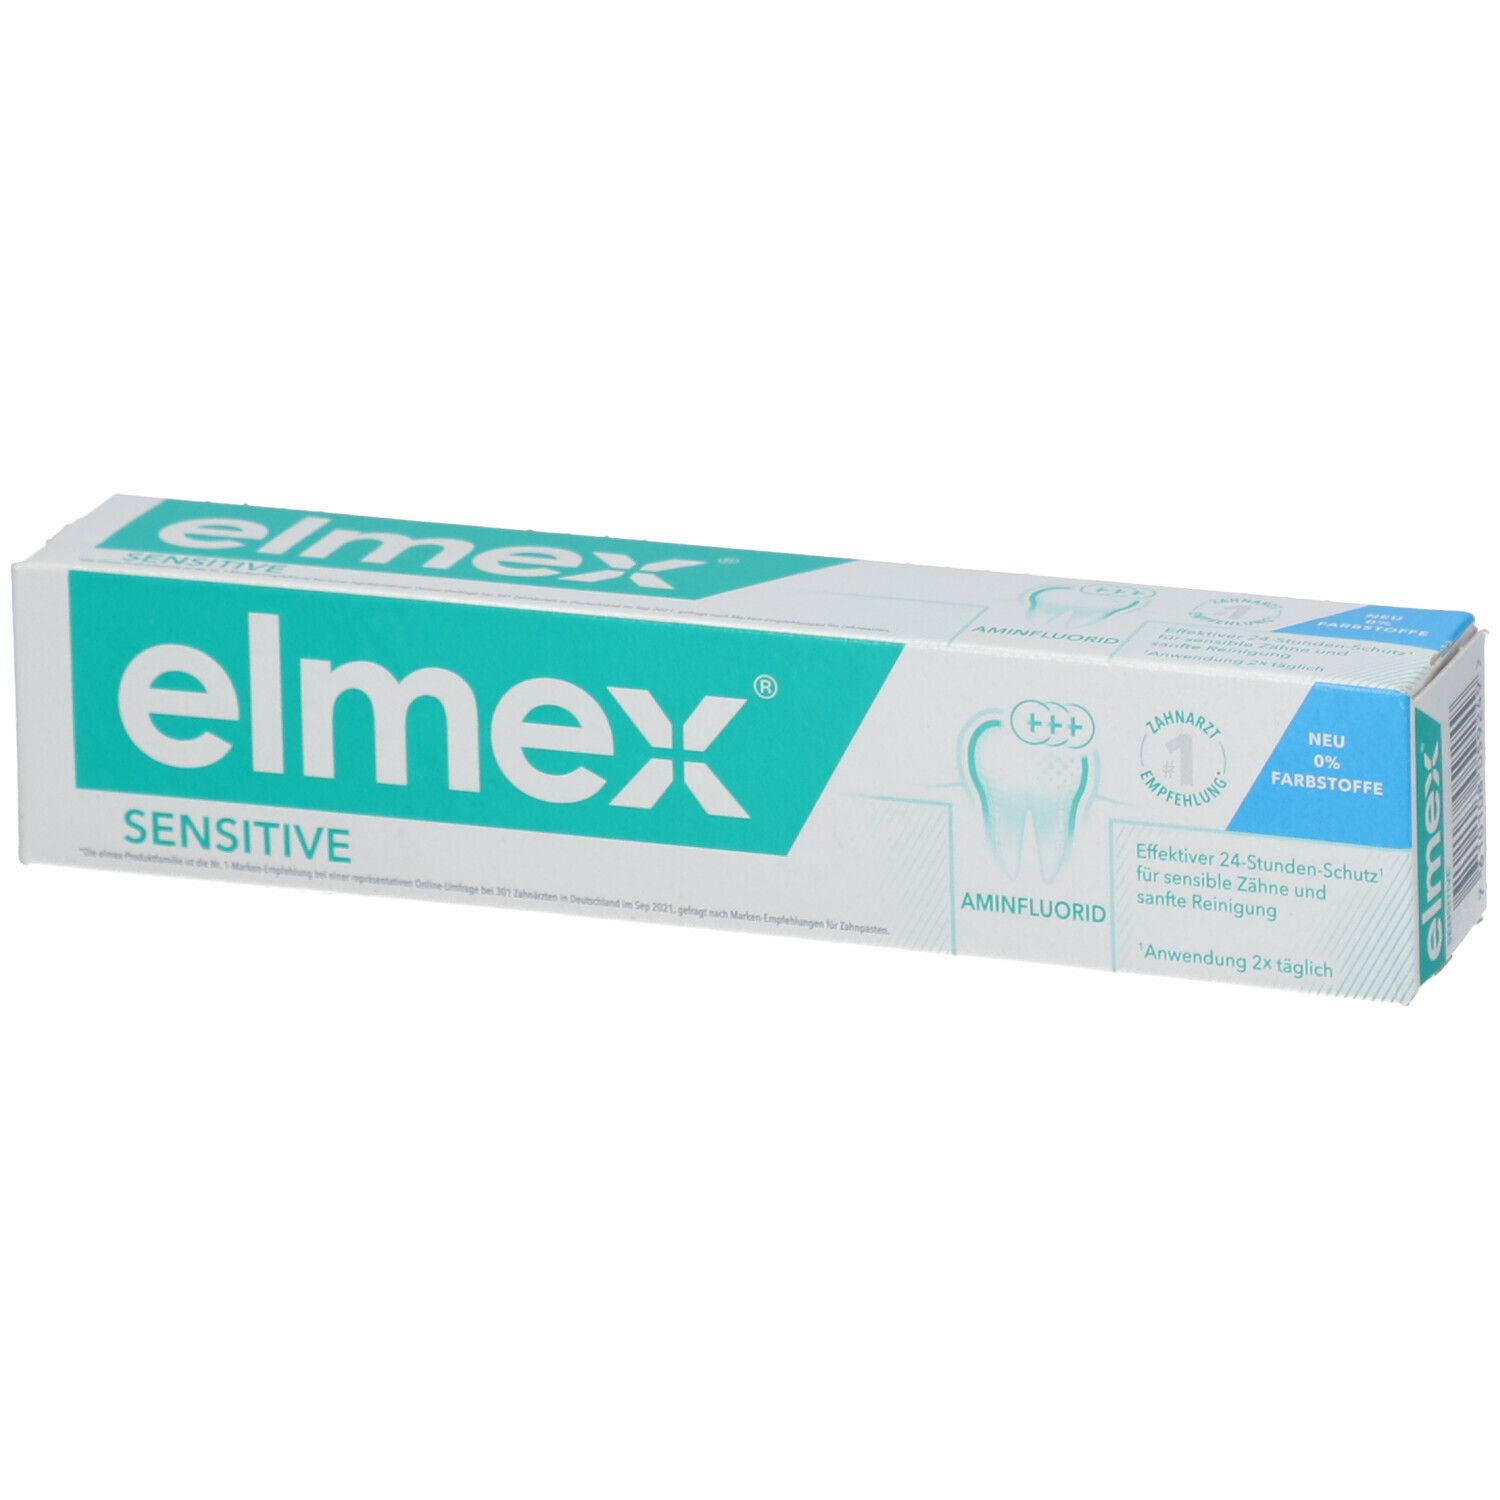 elmex Sensitive Zahnpasta